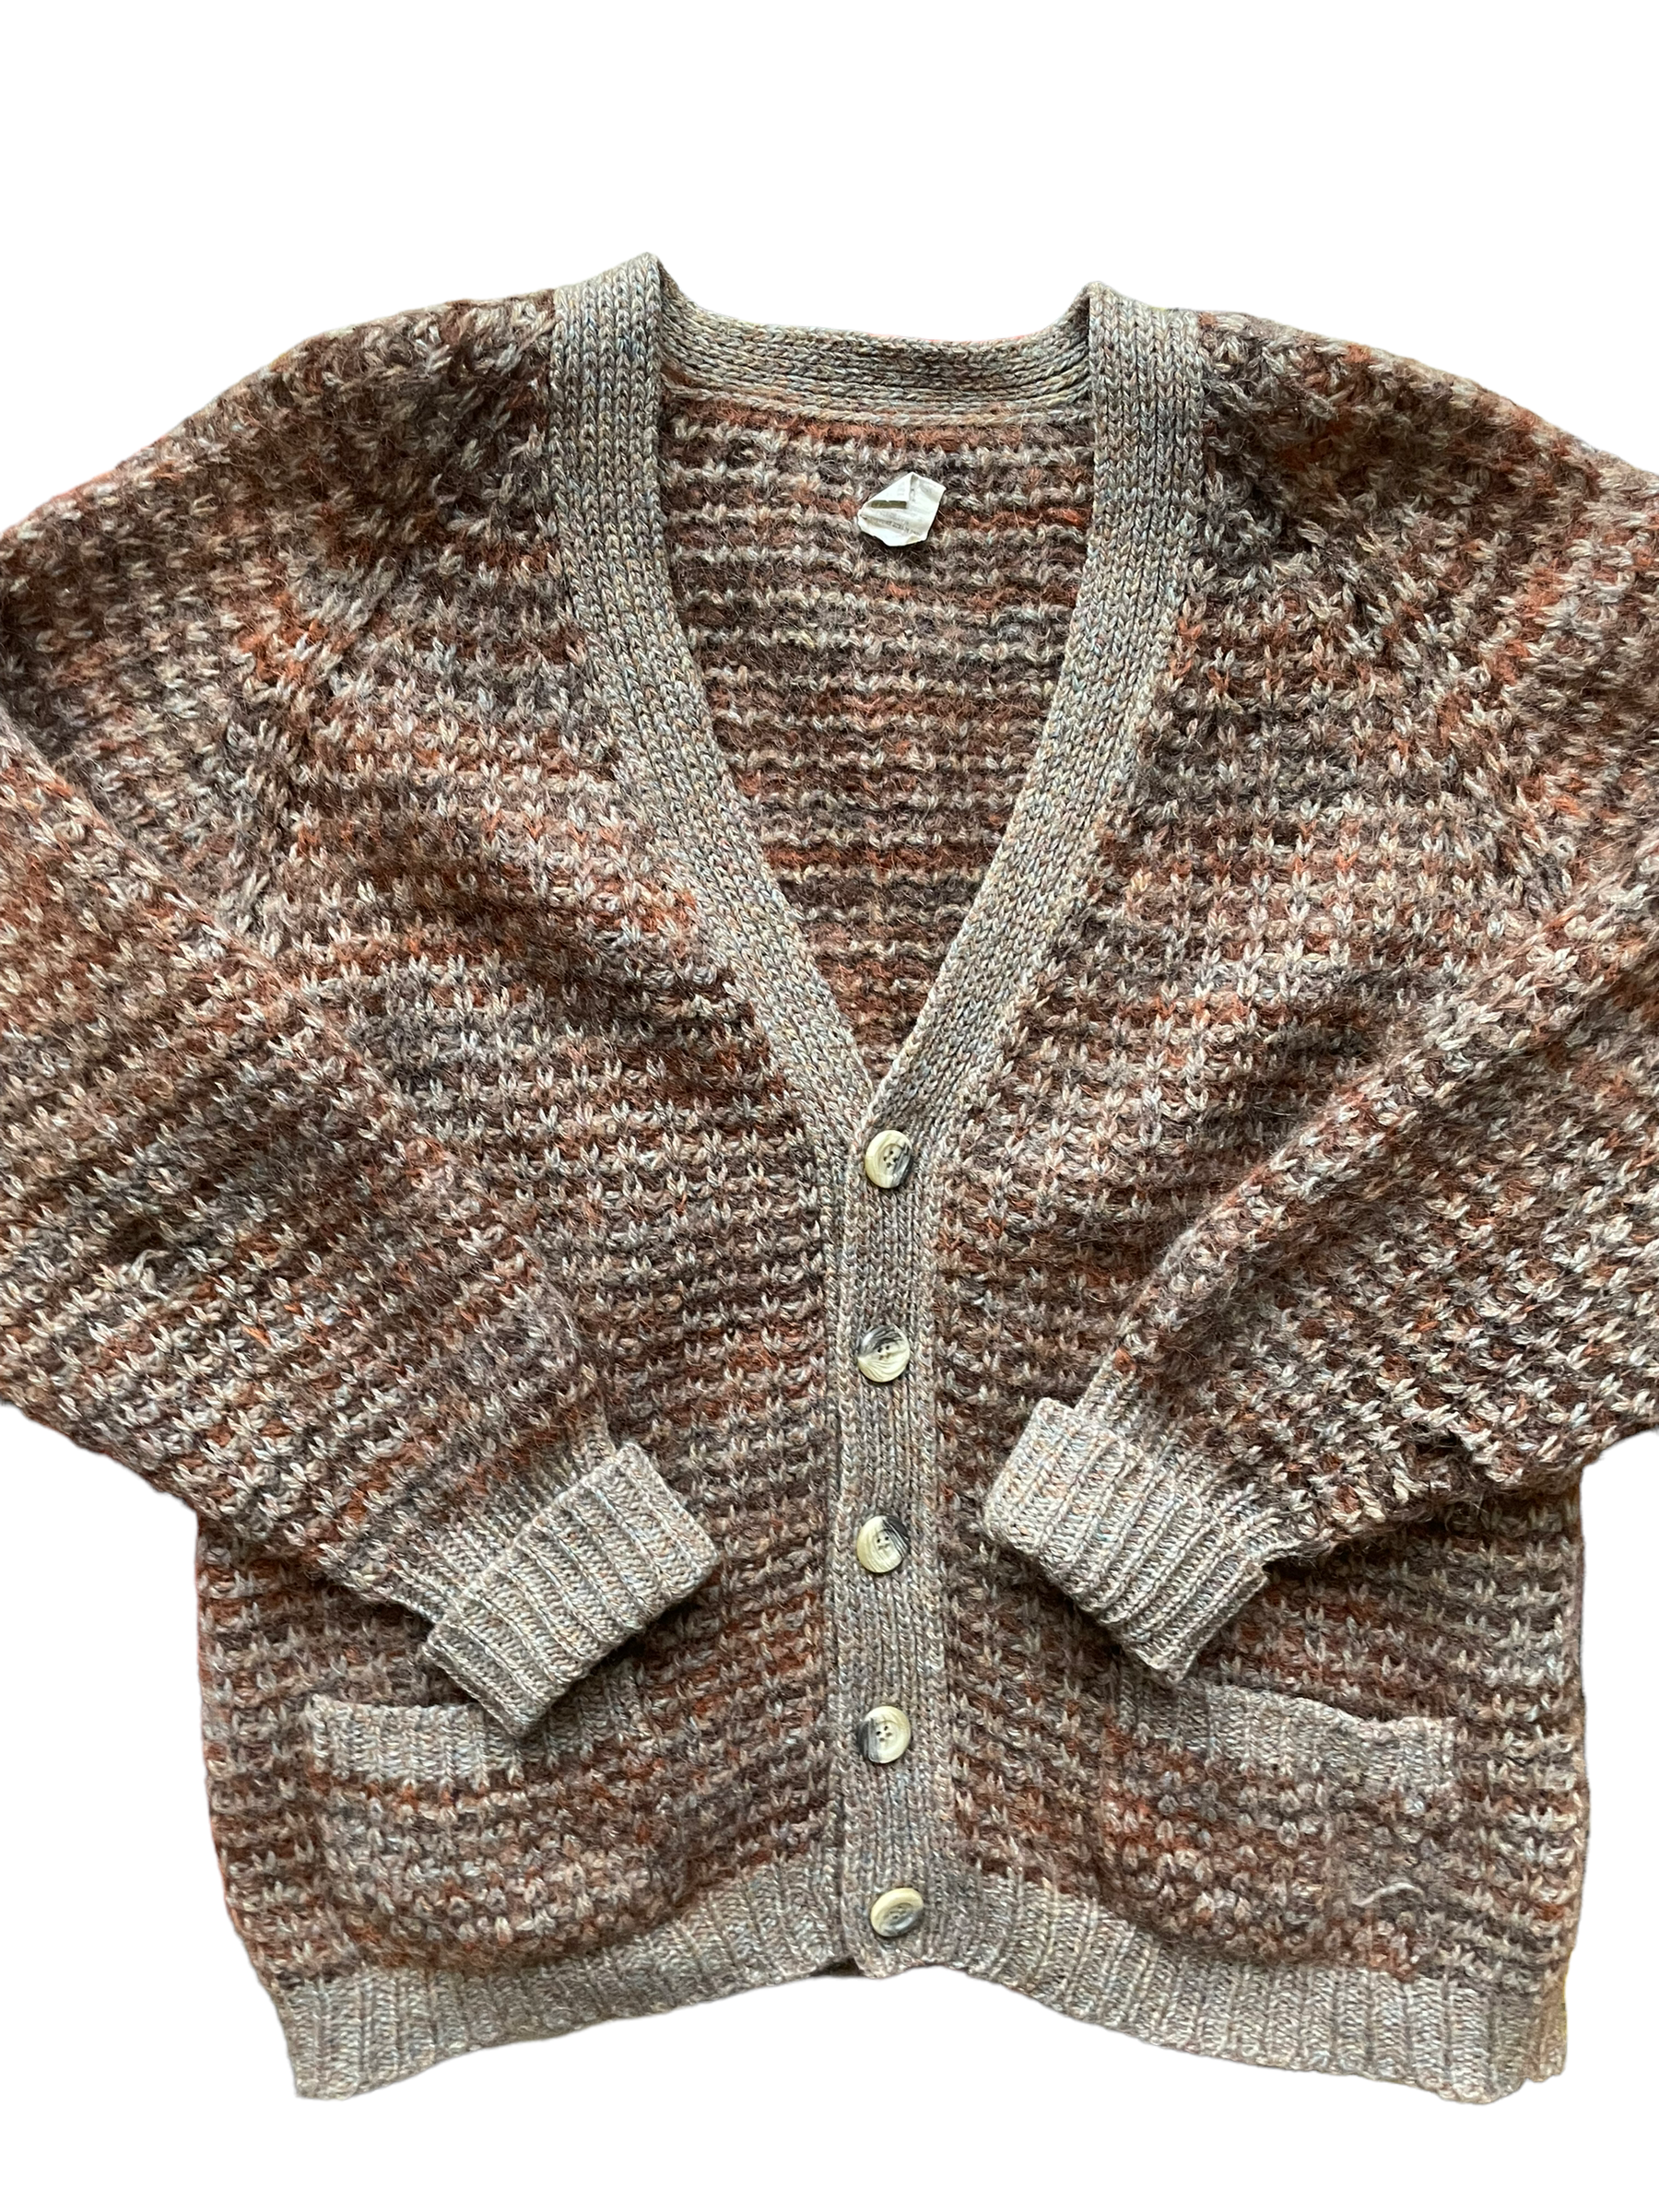 Vintage 1960s Shetland Wool Grampa Cardigan |  Barn Owl Vintage | Seattle Vintage Sweaters Full front view